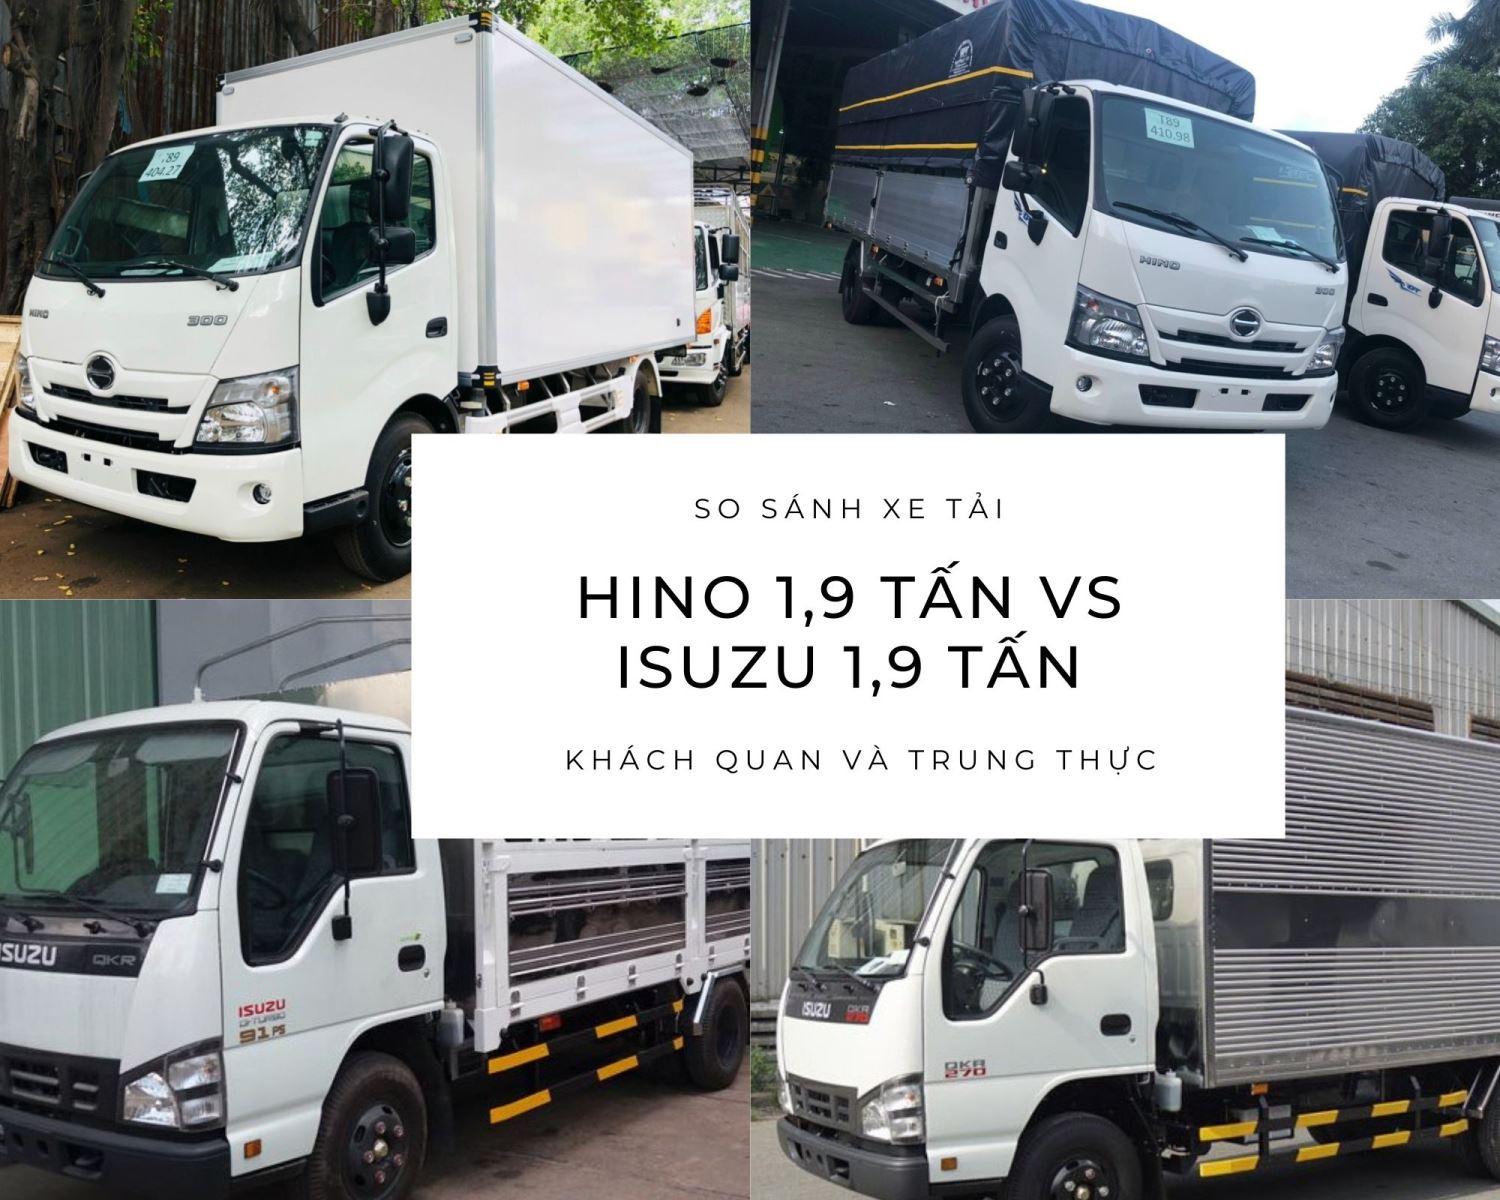 So sánh xe tải Isuzu 1.9 tấn với Hino 1.9 tấn. So sánh Hino 1T9 với Isuzu 1T9